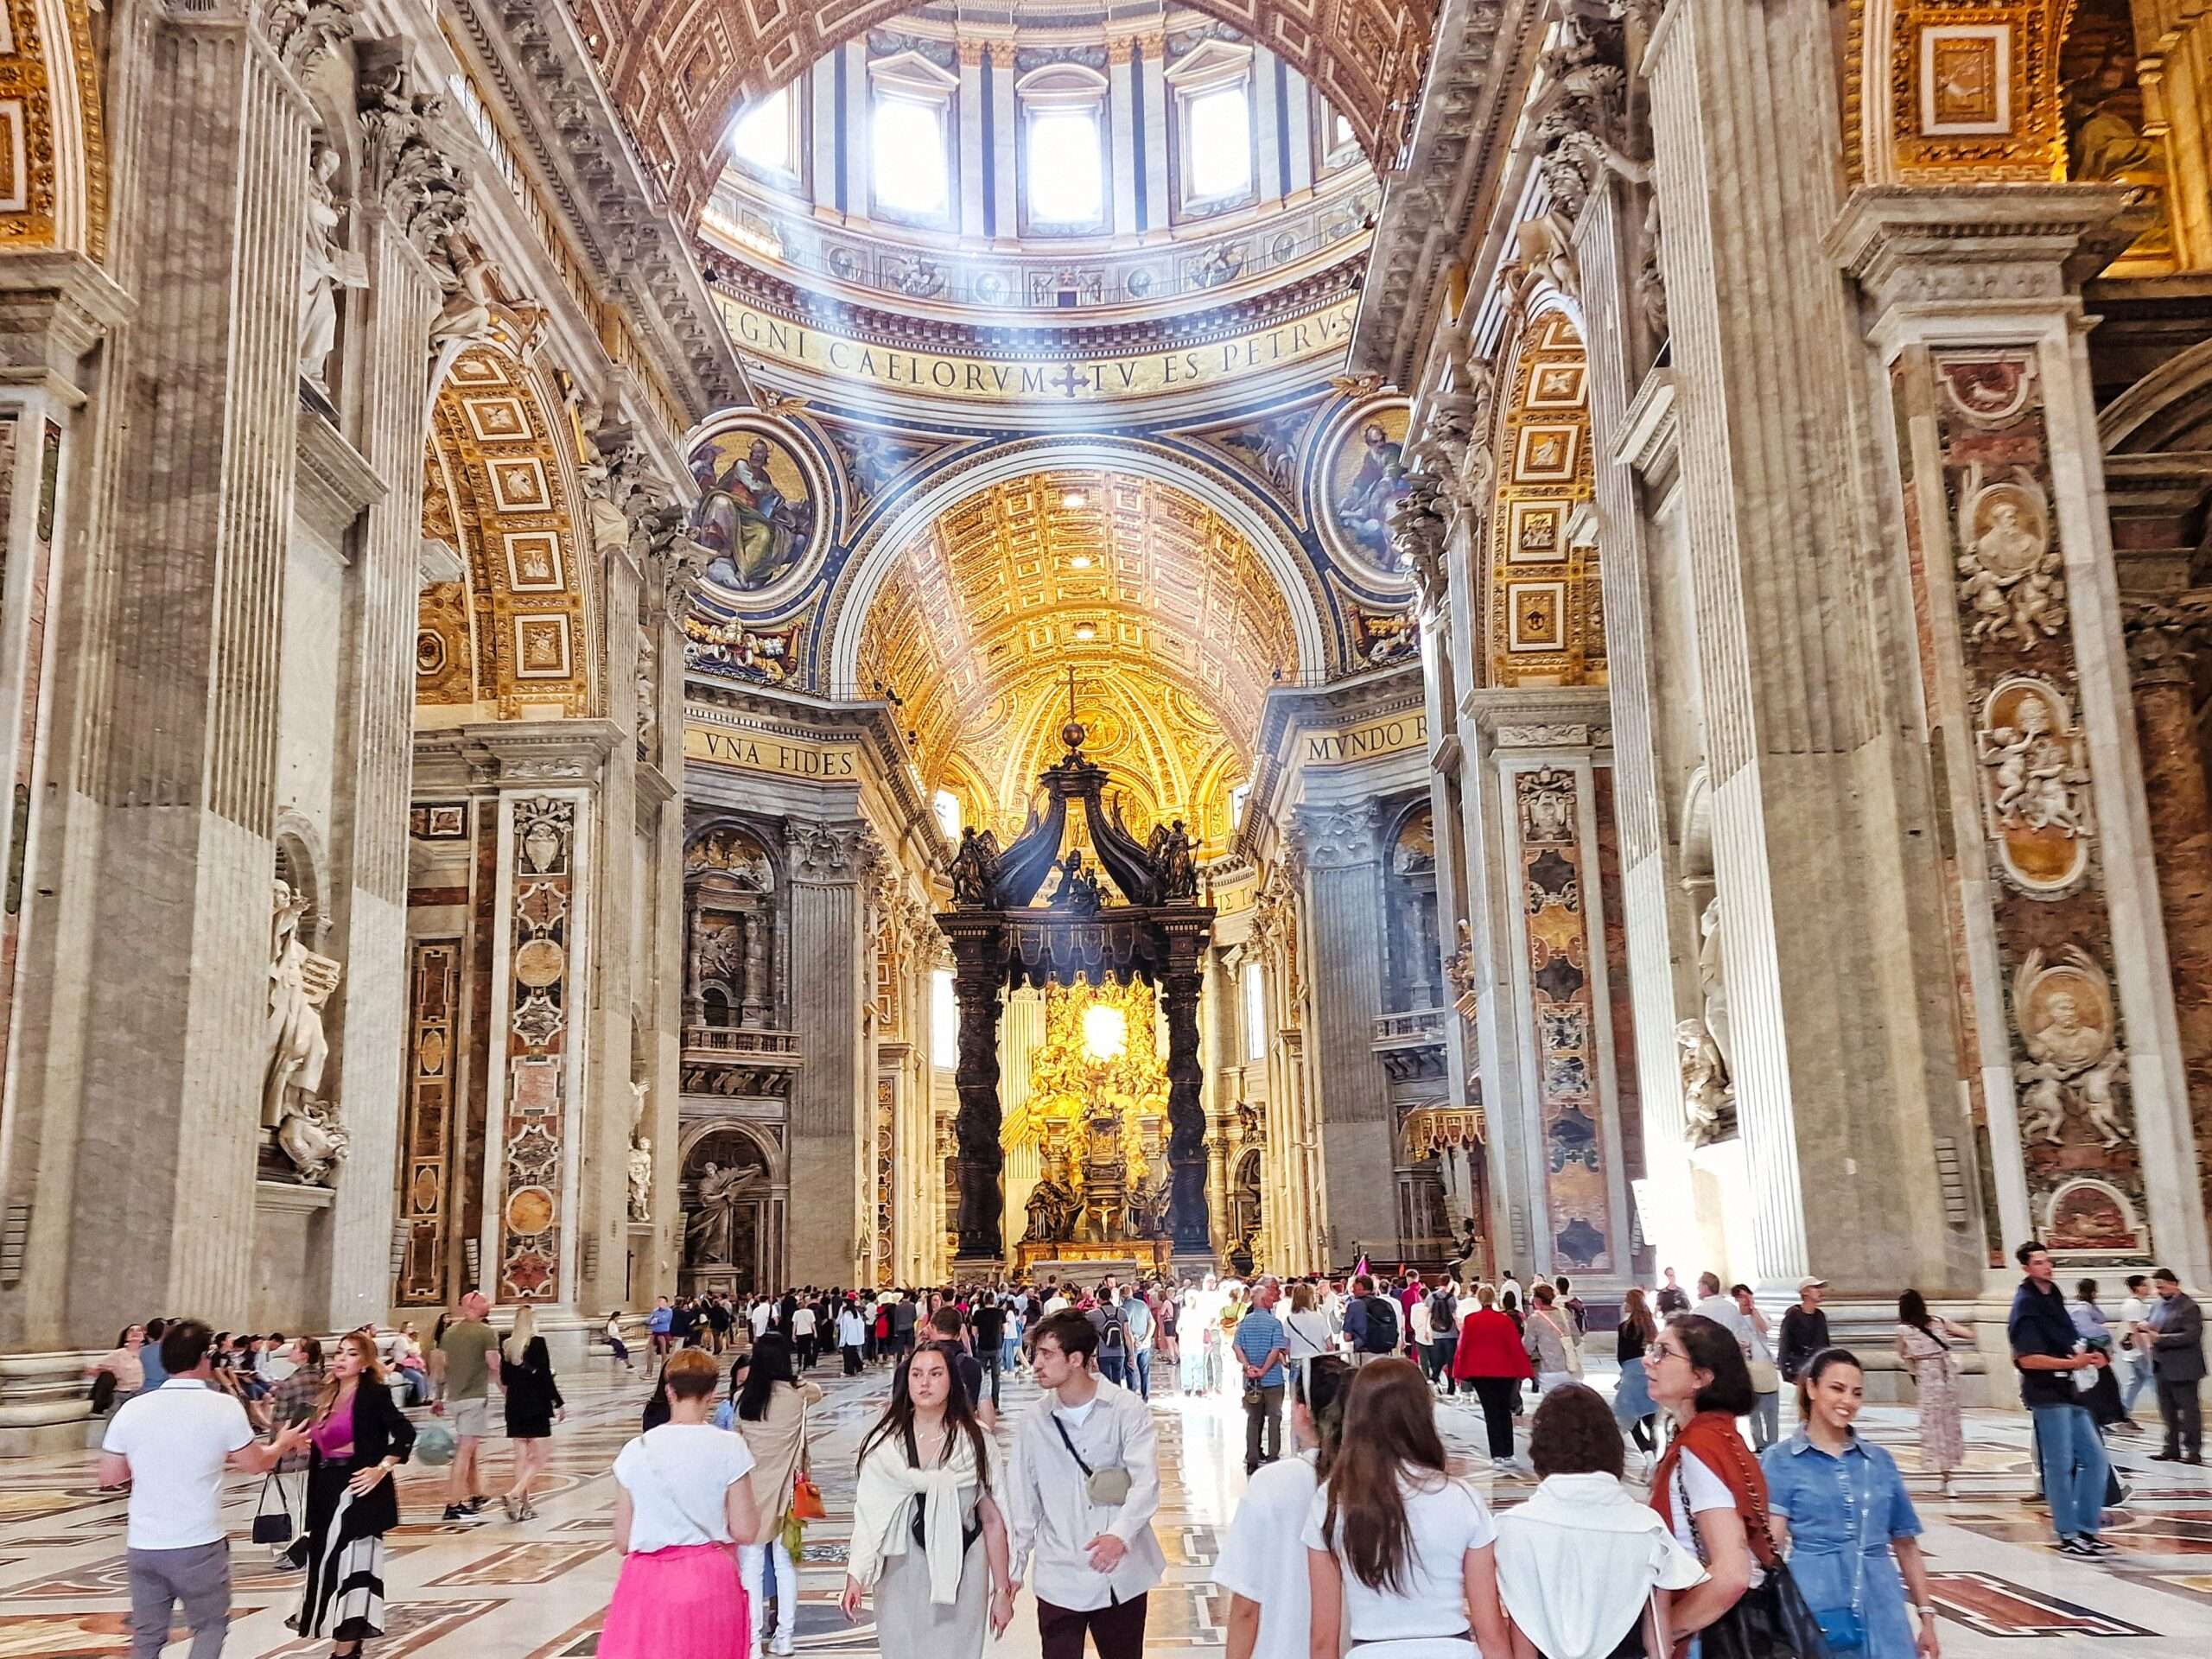 imponujące wnętrze bazyliki św. Piotra w Watykanie podczas wyjazdu na city-break do Rzymu na długi weekend majowy